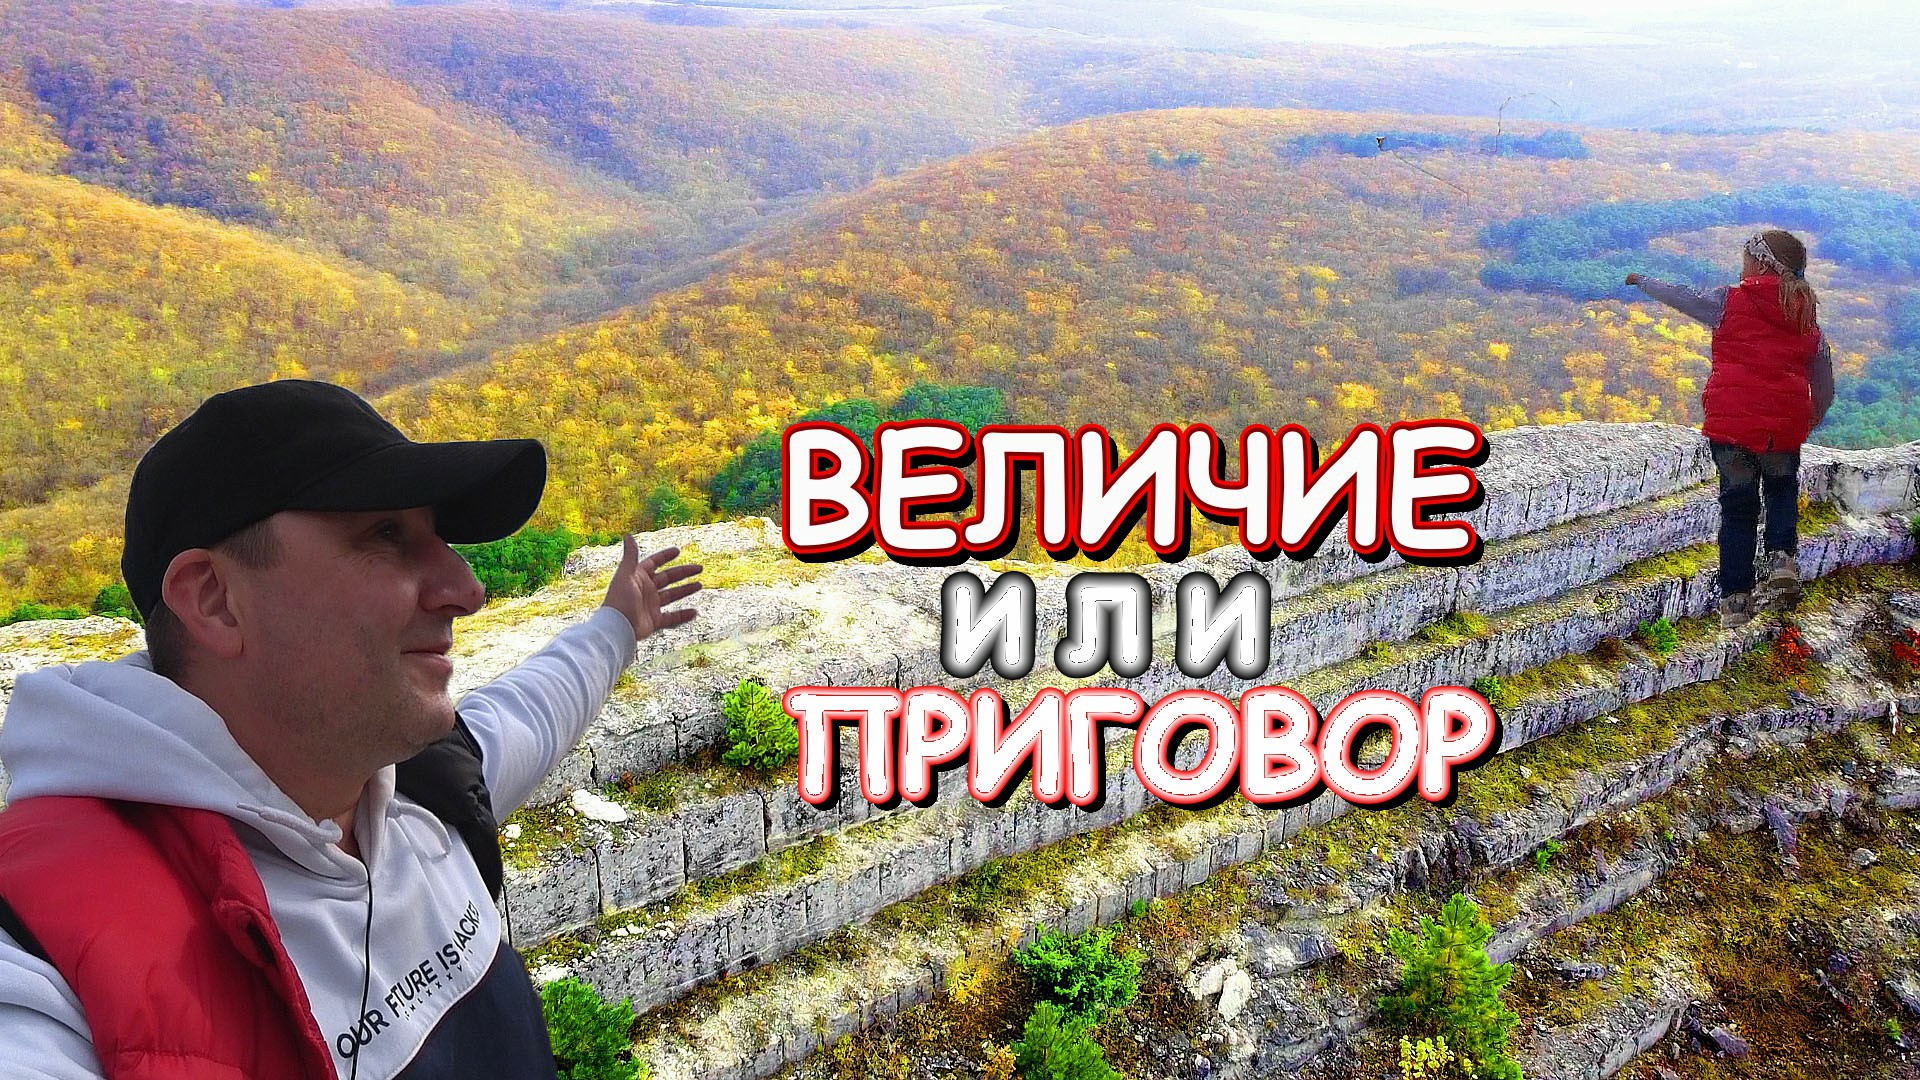 @ Эпичные места Крыма Грибы на скалах Керт Мелик Величие или ПРИГОВОР человечества